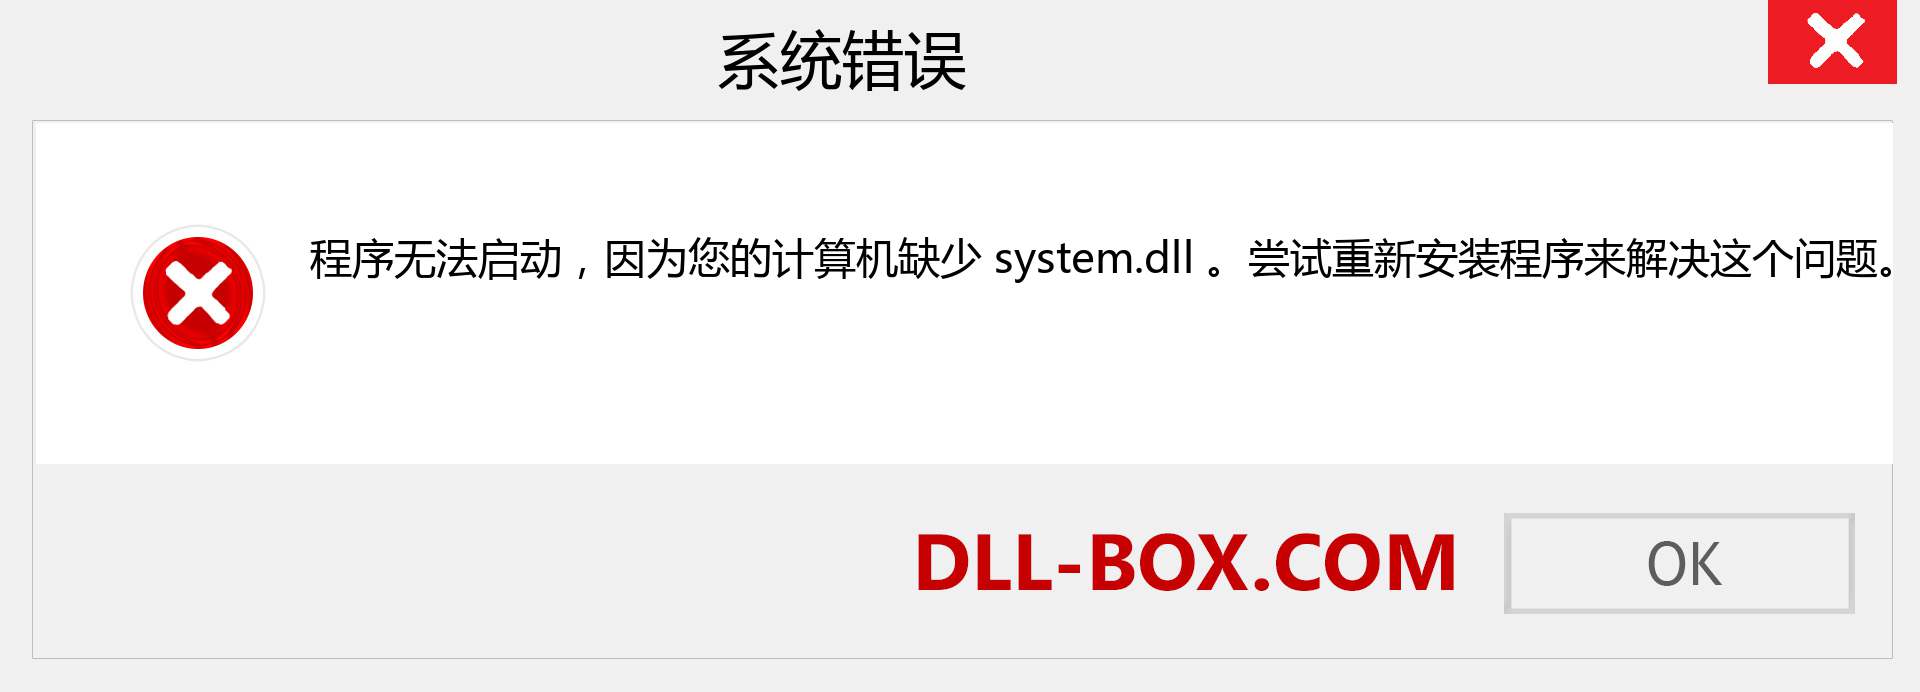 system.dll 文件丢失？。 适用于 Windows 7、8、10 的下载 - 修复 Windows、照片、图像上的 system dll 丢失错误